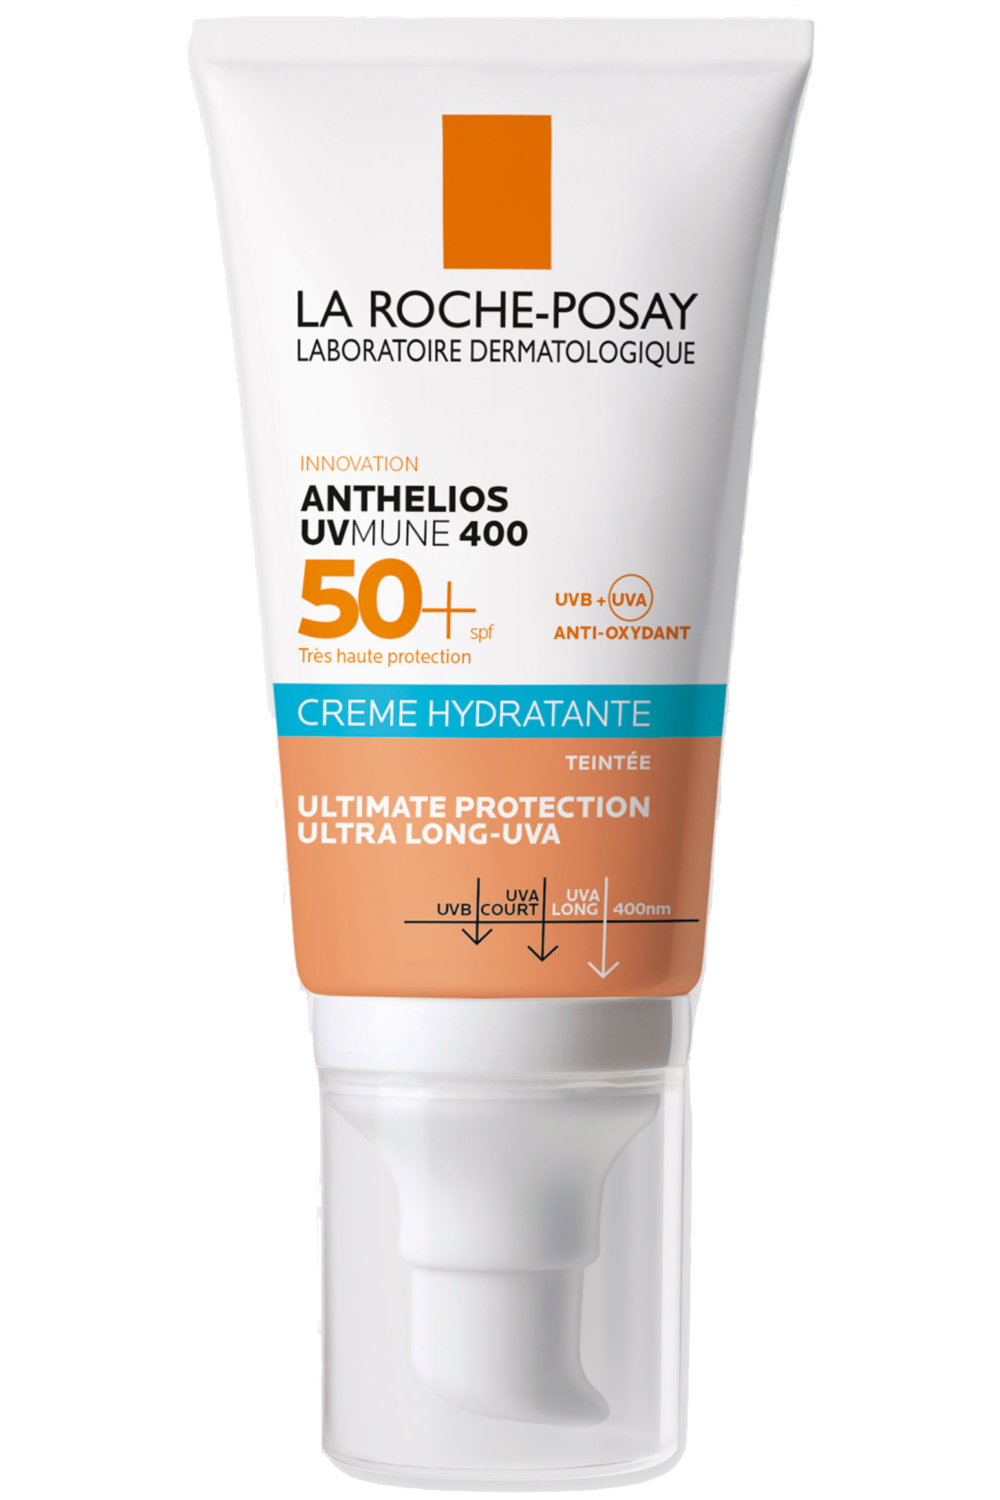 La Roche-Posay - Crème solaire hydratante teintée SPF 50+ Anthelios